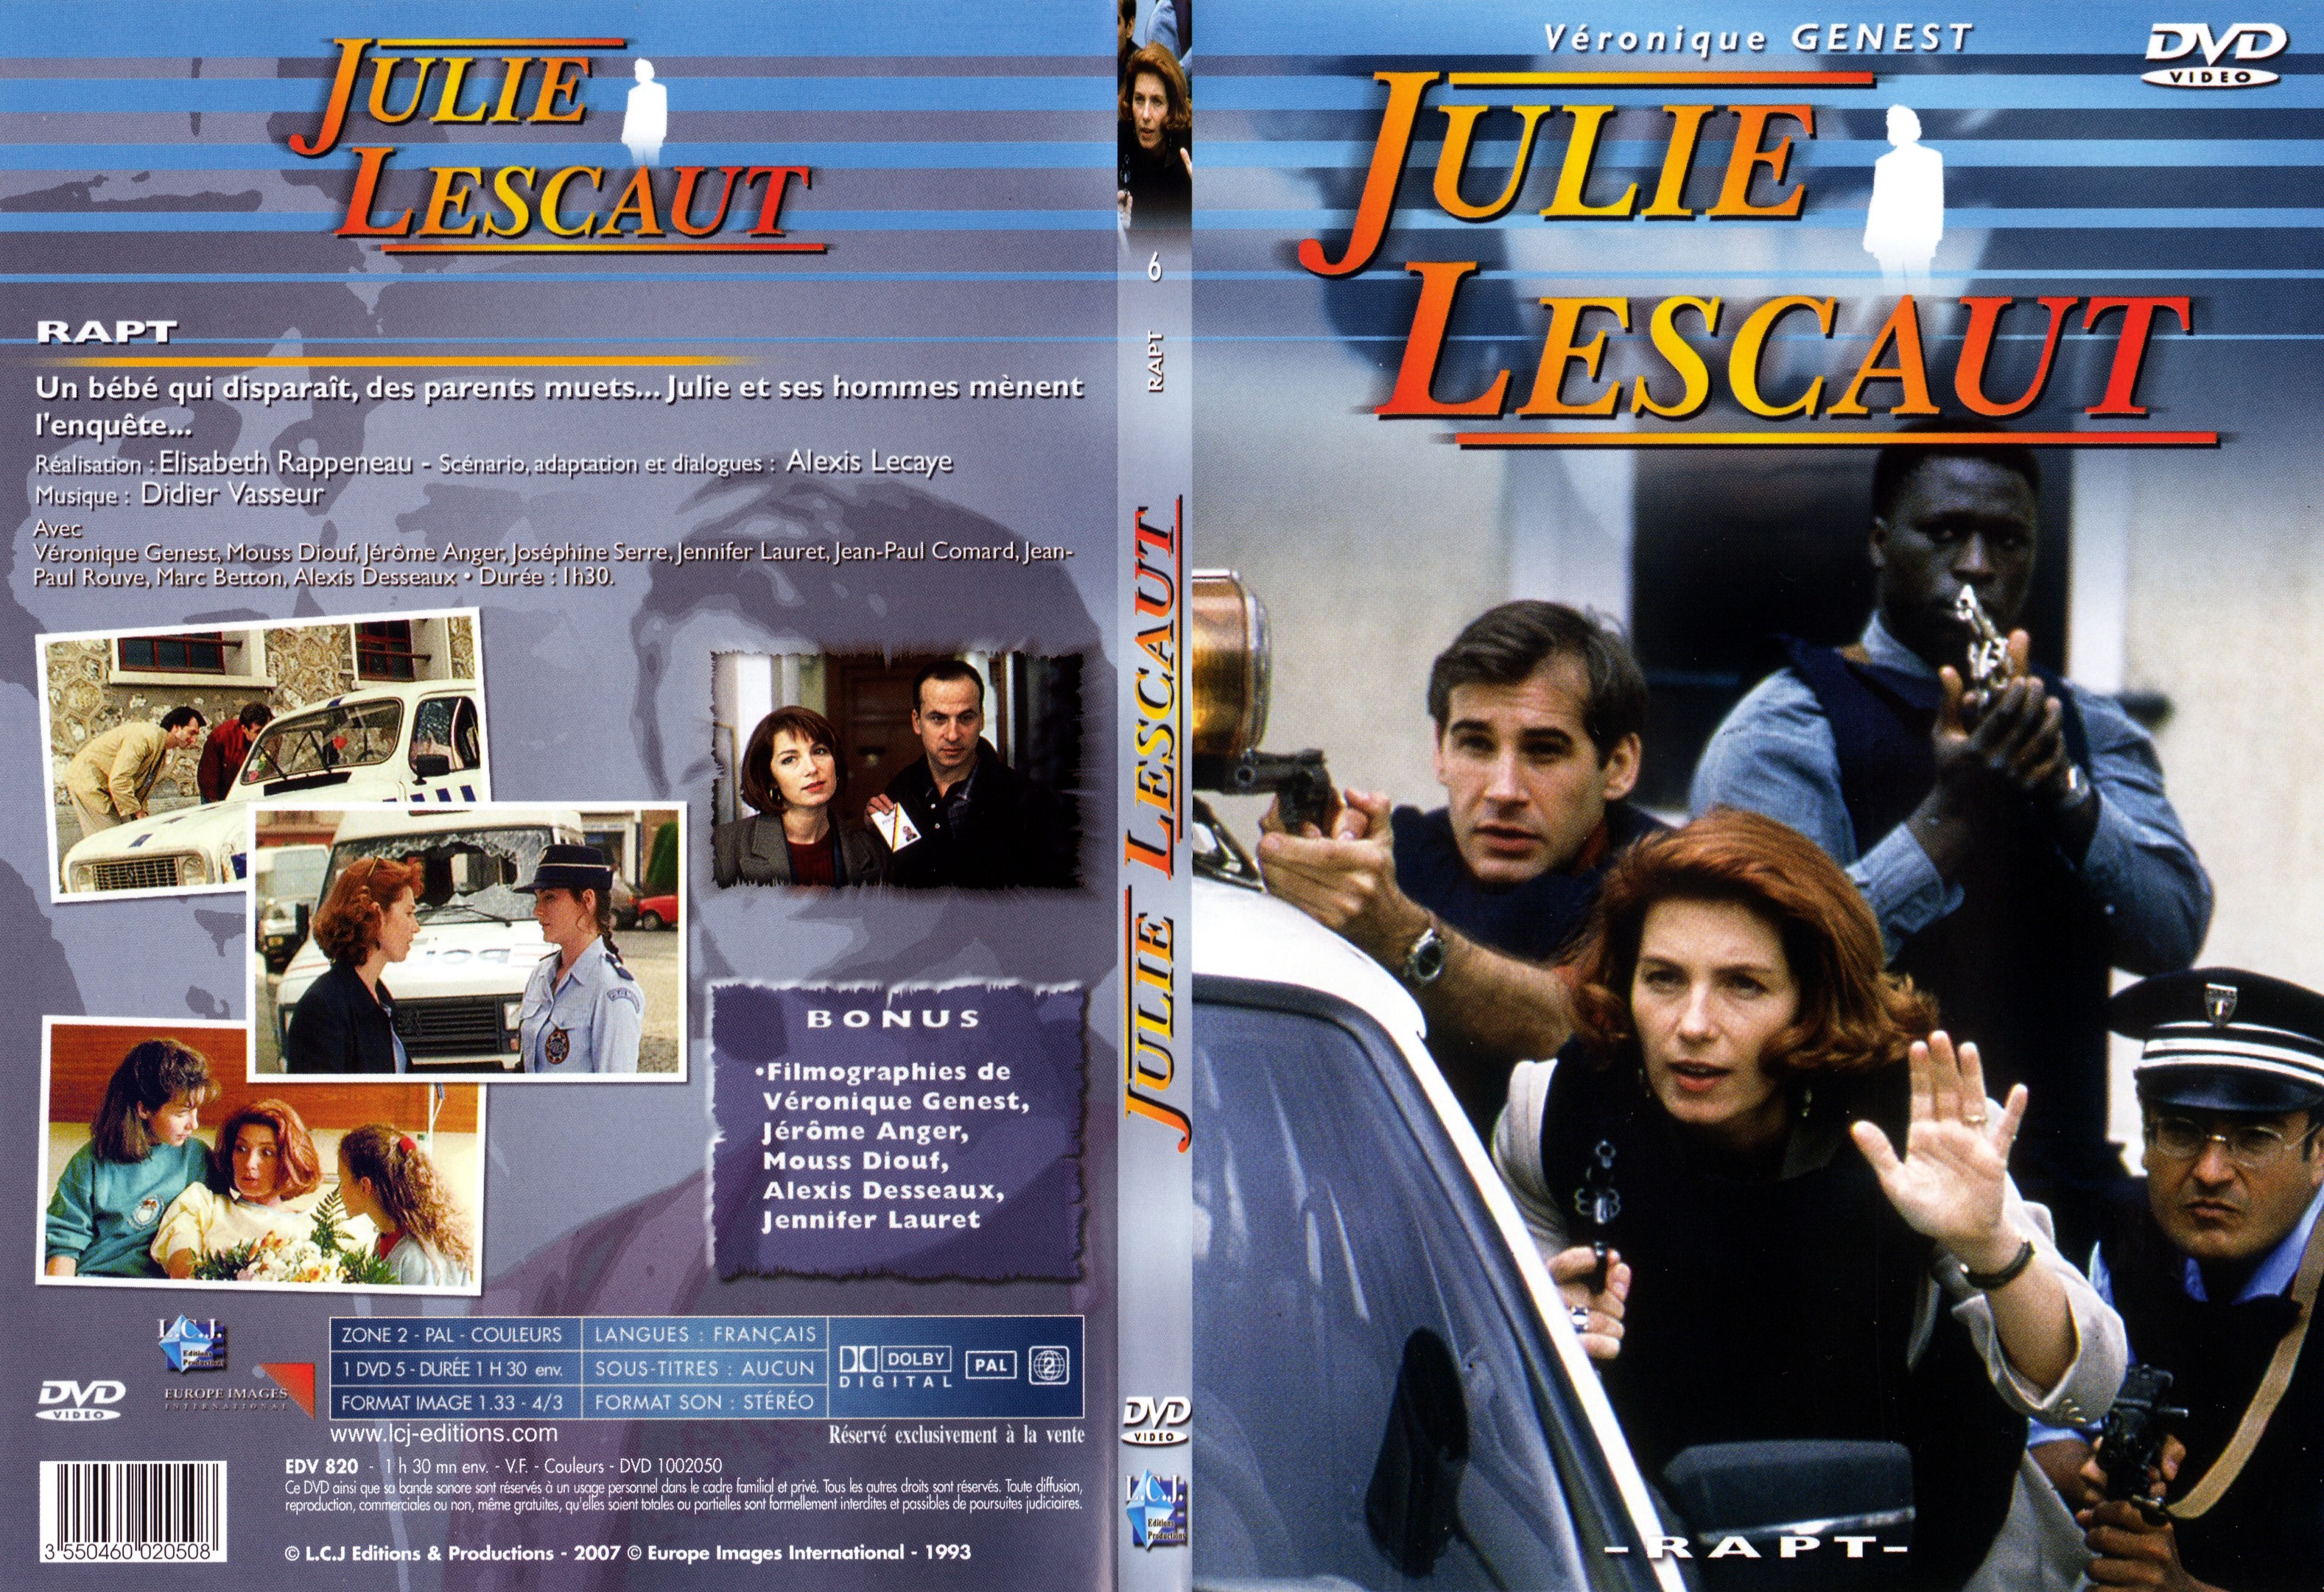 Jaquette DVD Julie Lescaut vol 06 - SLIM